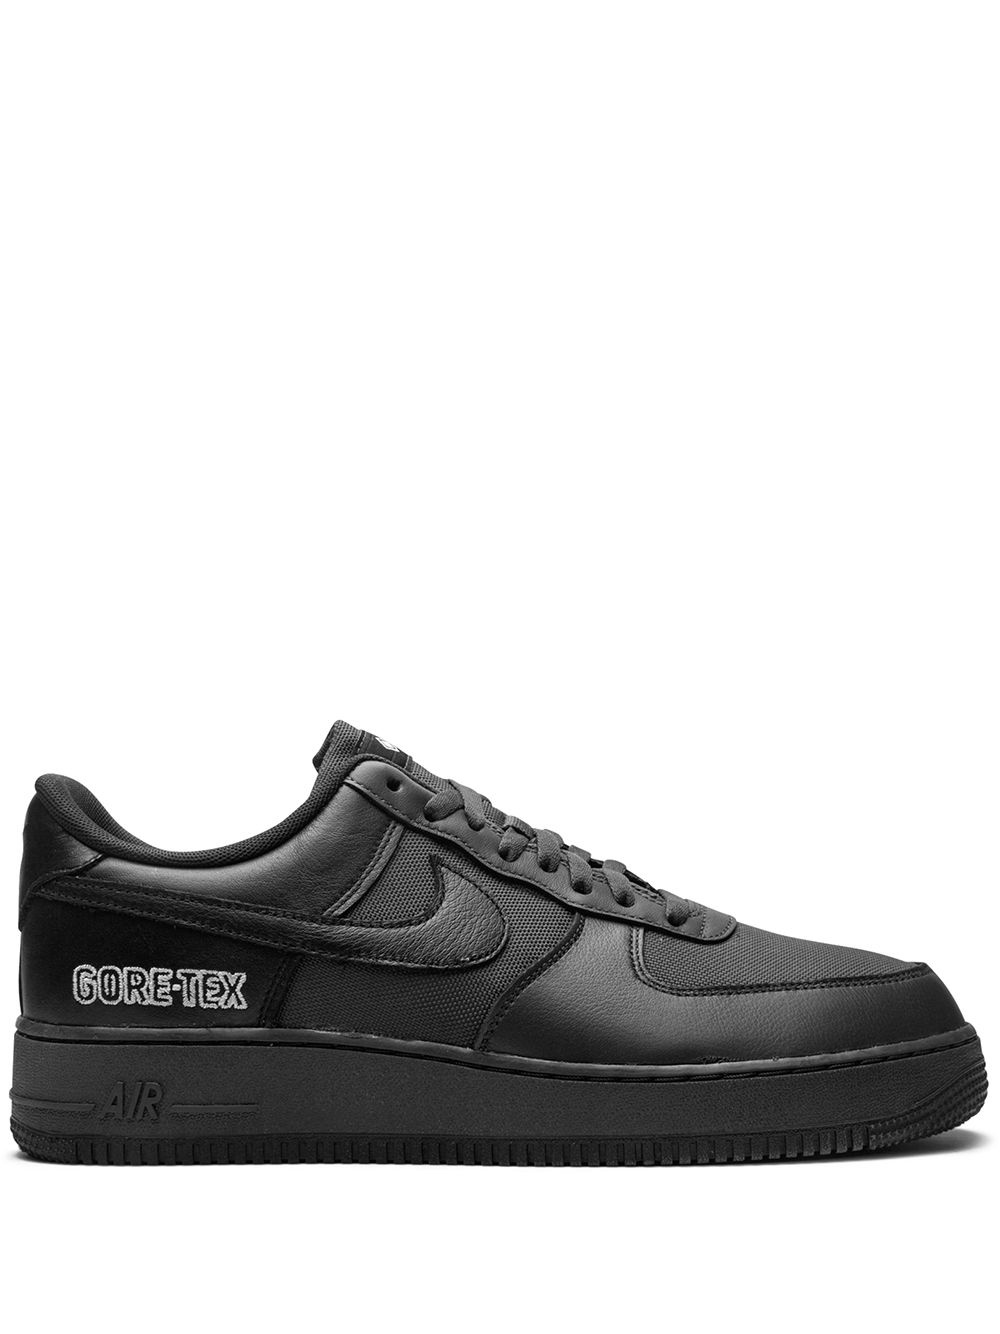 Air Force 1 Low Gore-Tex "Black" sneakers - 1